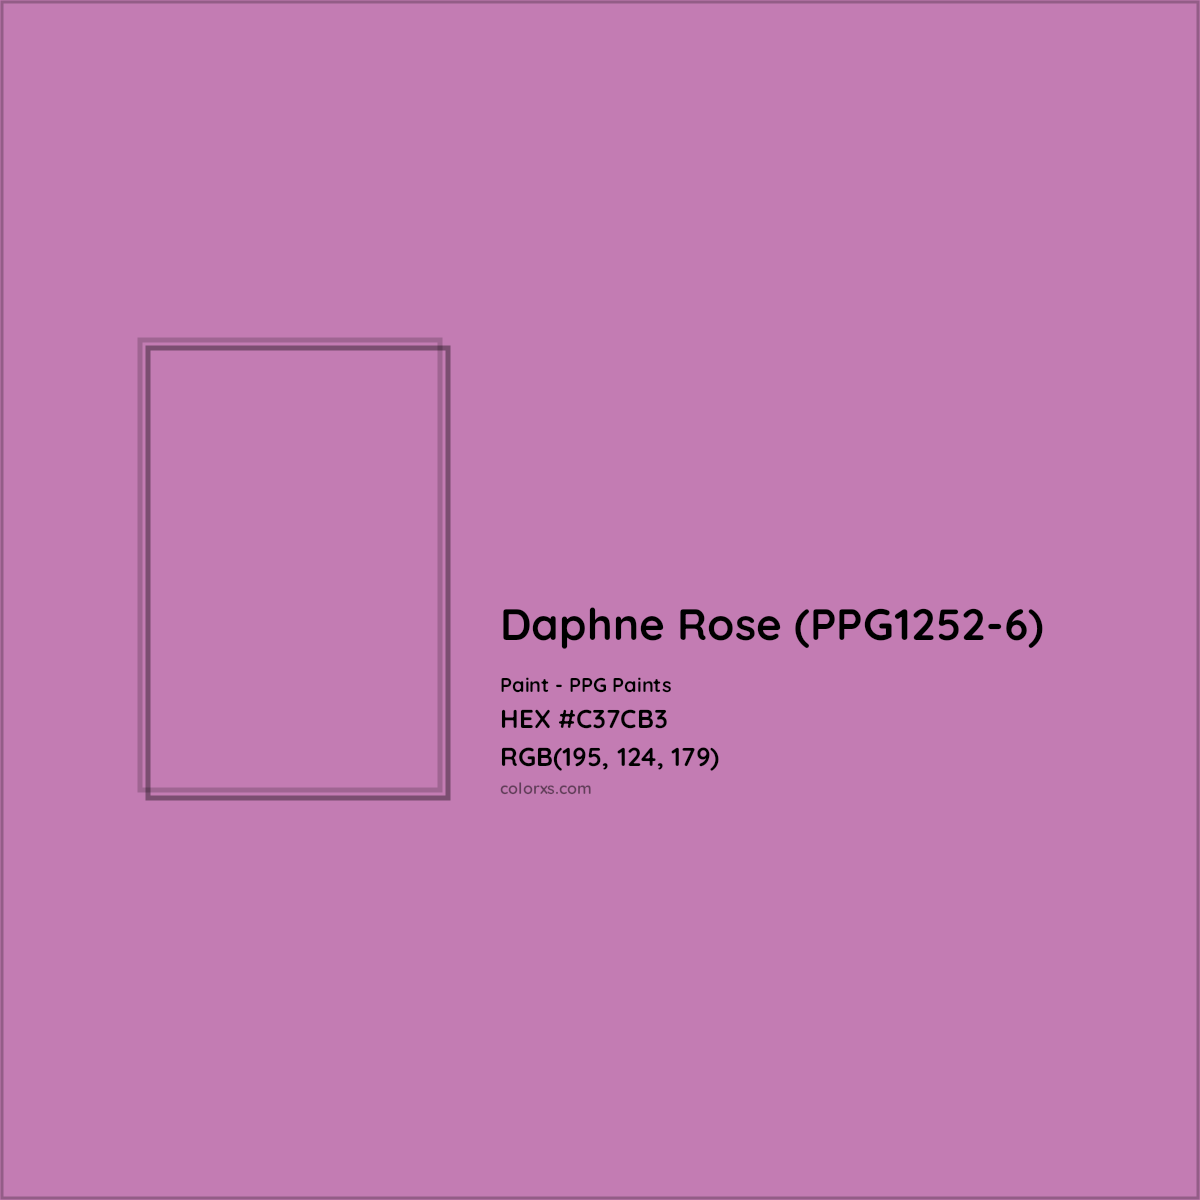 HEX #C37CB3 Daphne Rose (PPG1252-6) Paint PPG Paints - Color Code